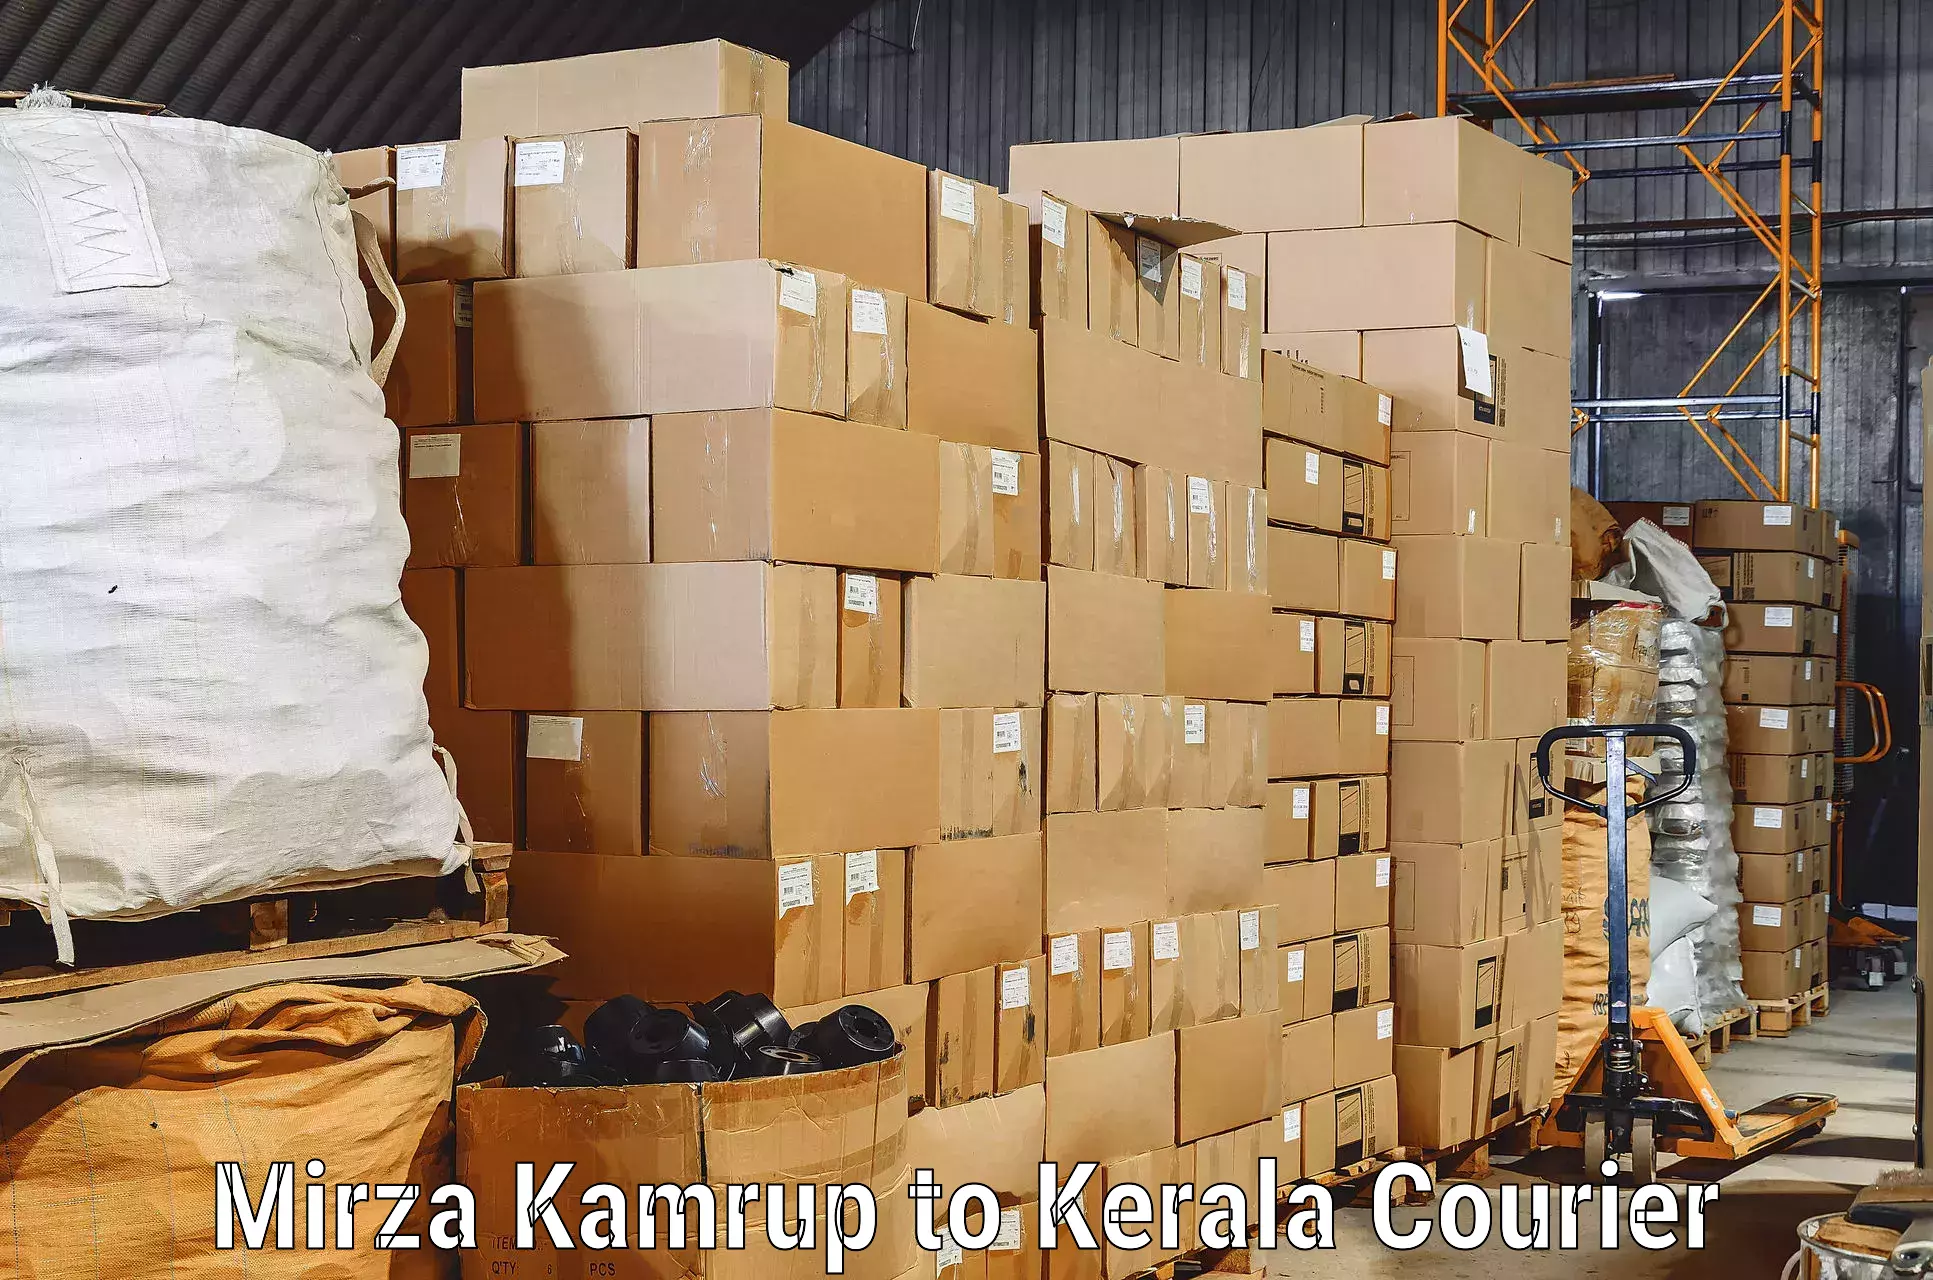 Furniture delivery service Mirza Kamrup to Kayamkulam